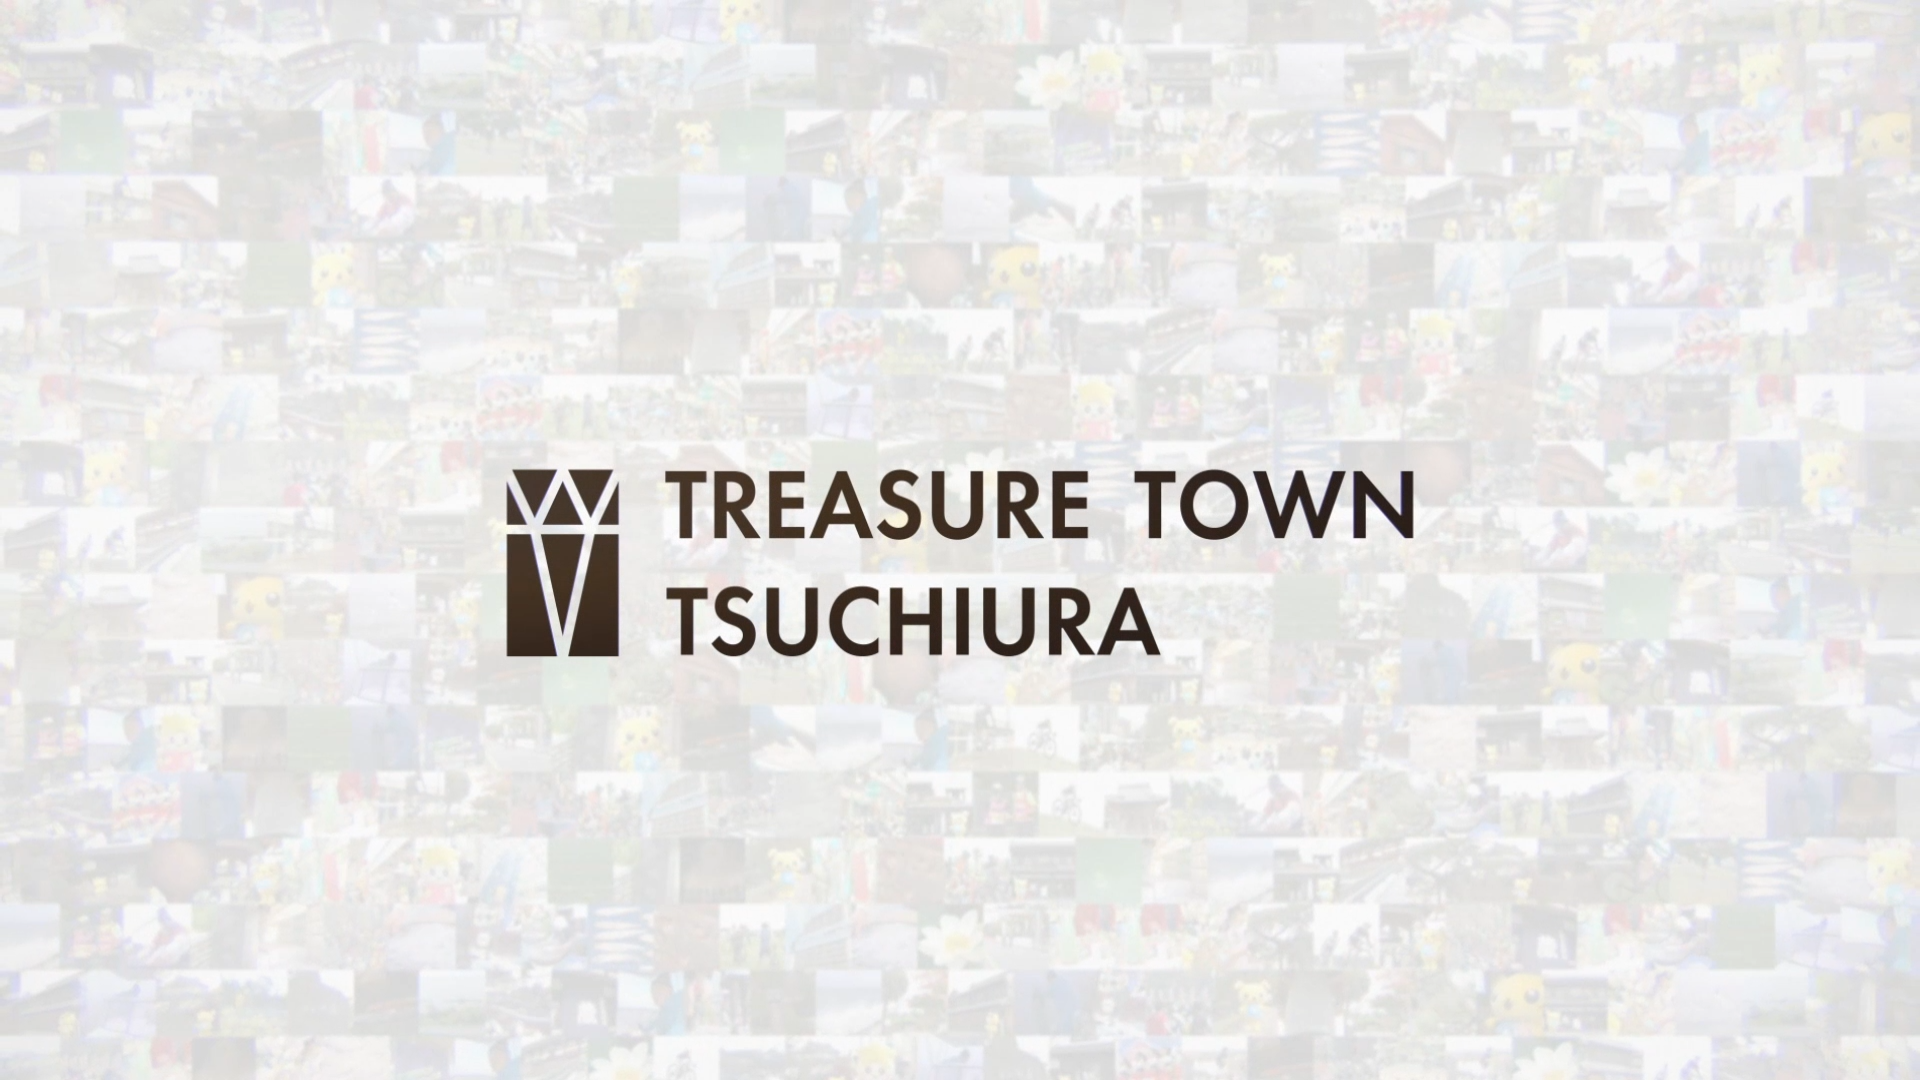 TREASURE TOWN TSUCHIURA「れんこん編」